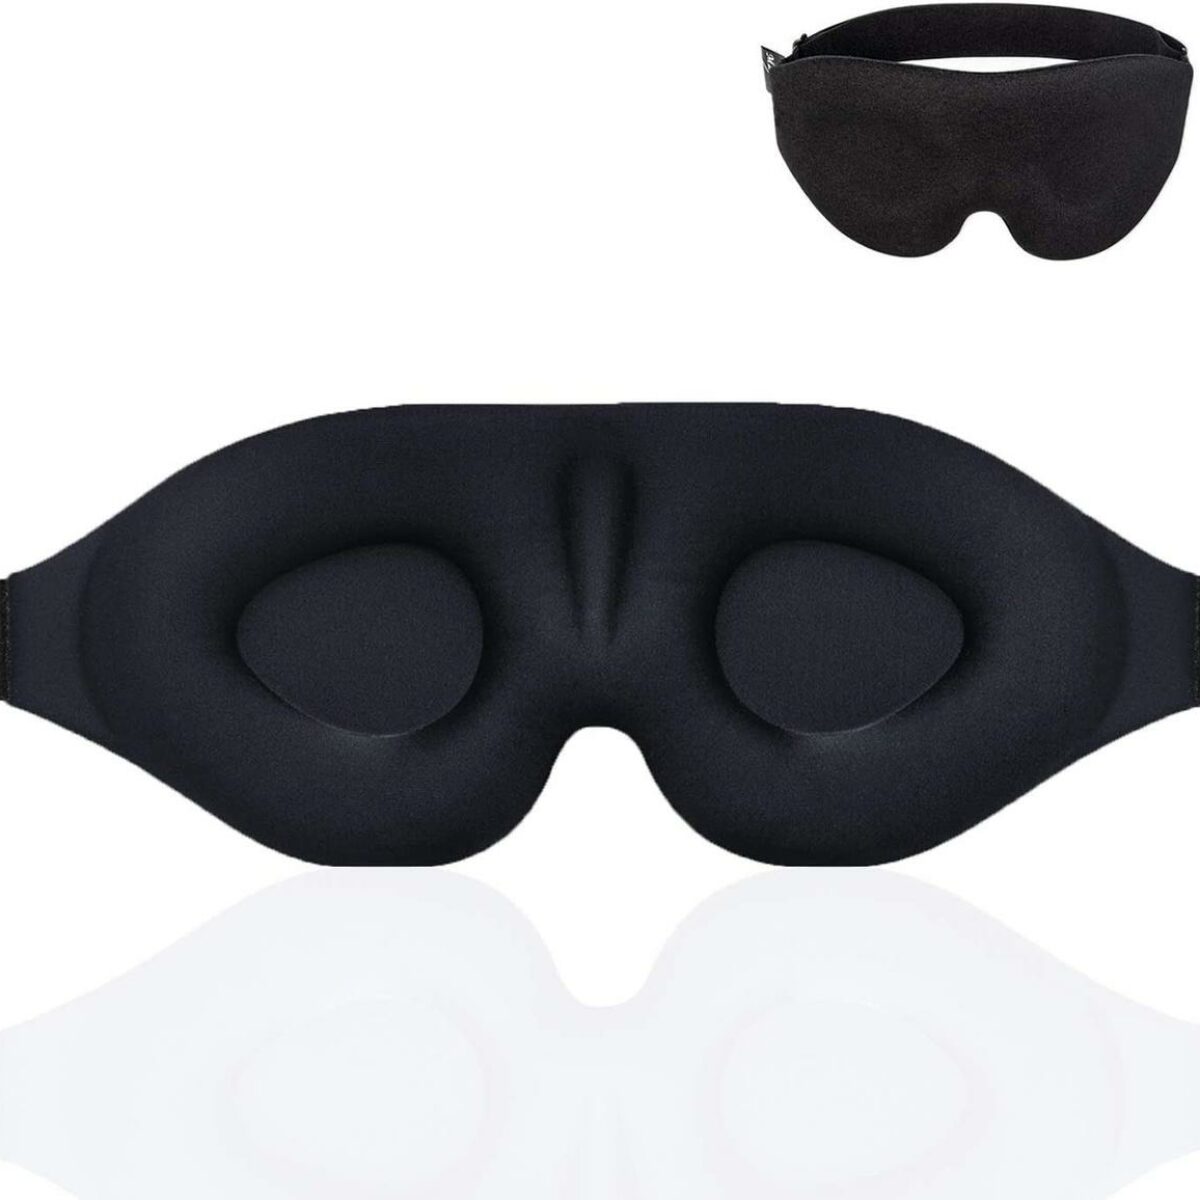 10 BLACK BLINDFOLDS eye masks blindfold mask eyemask 